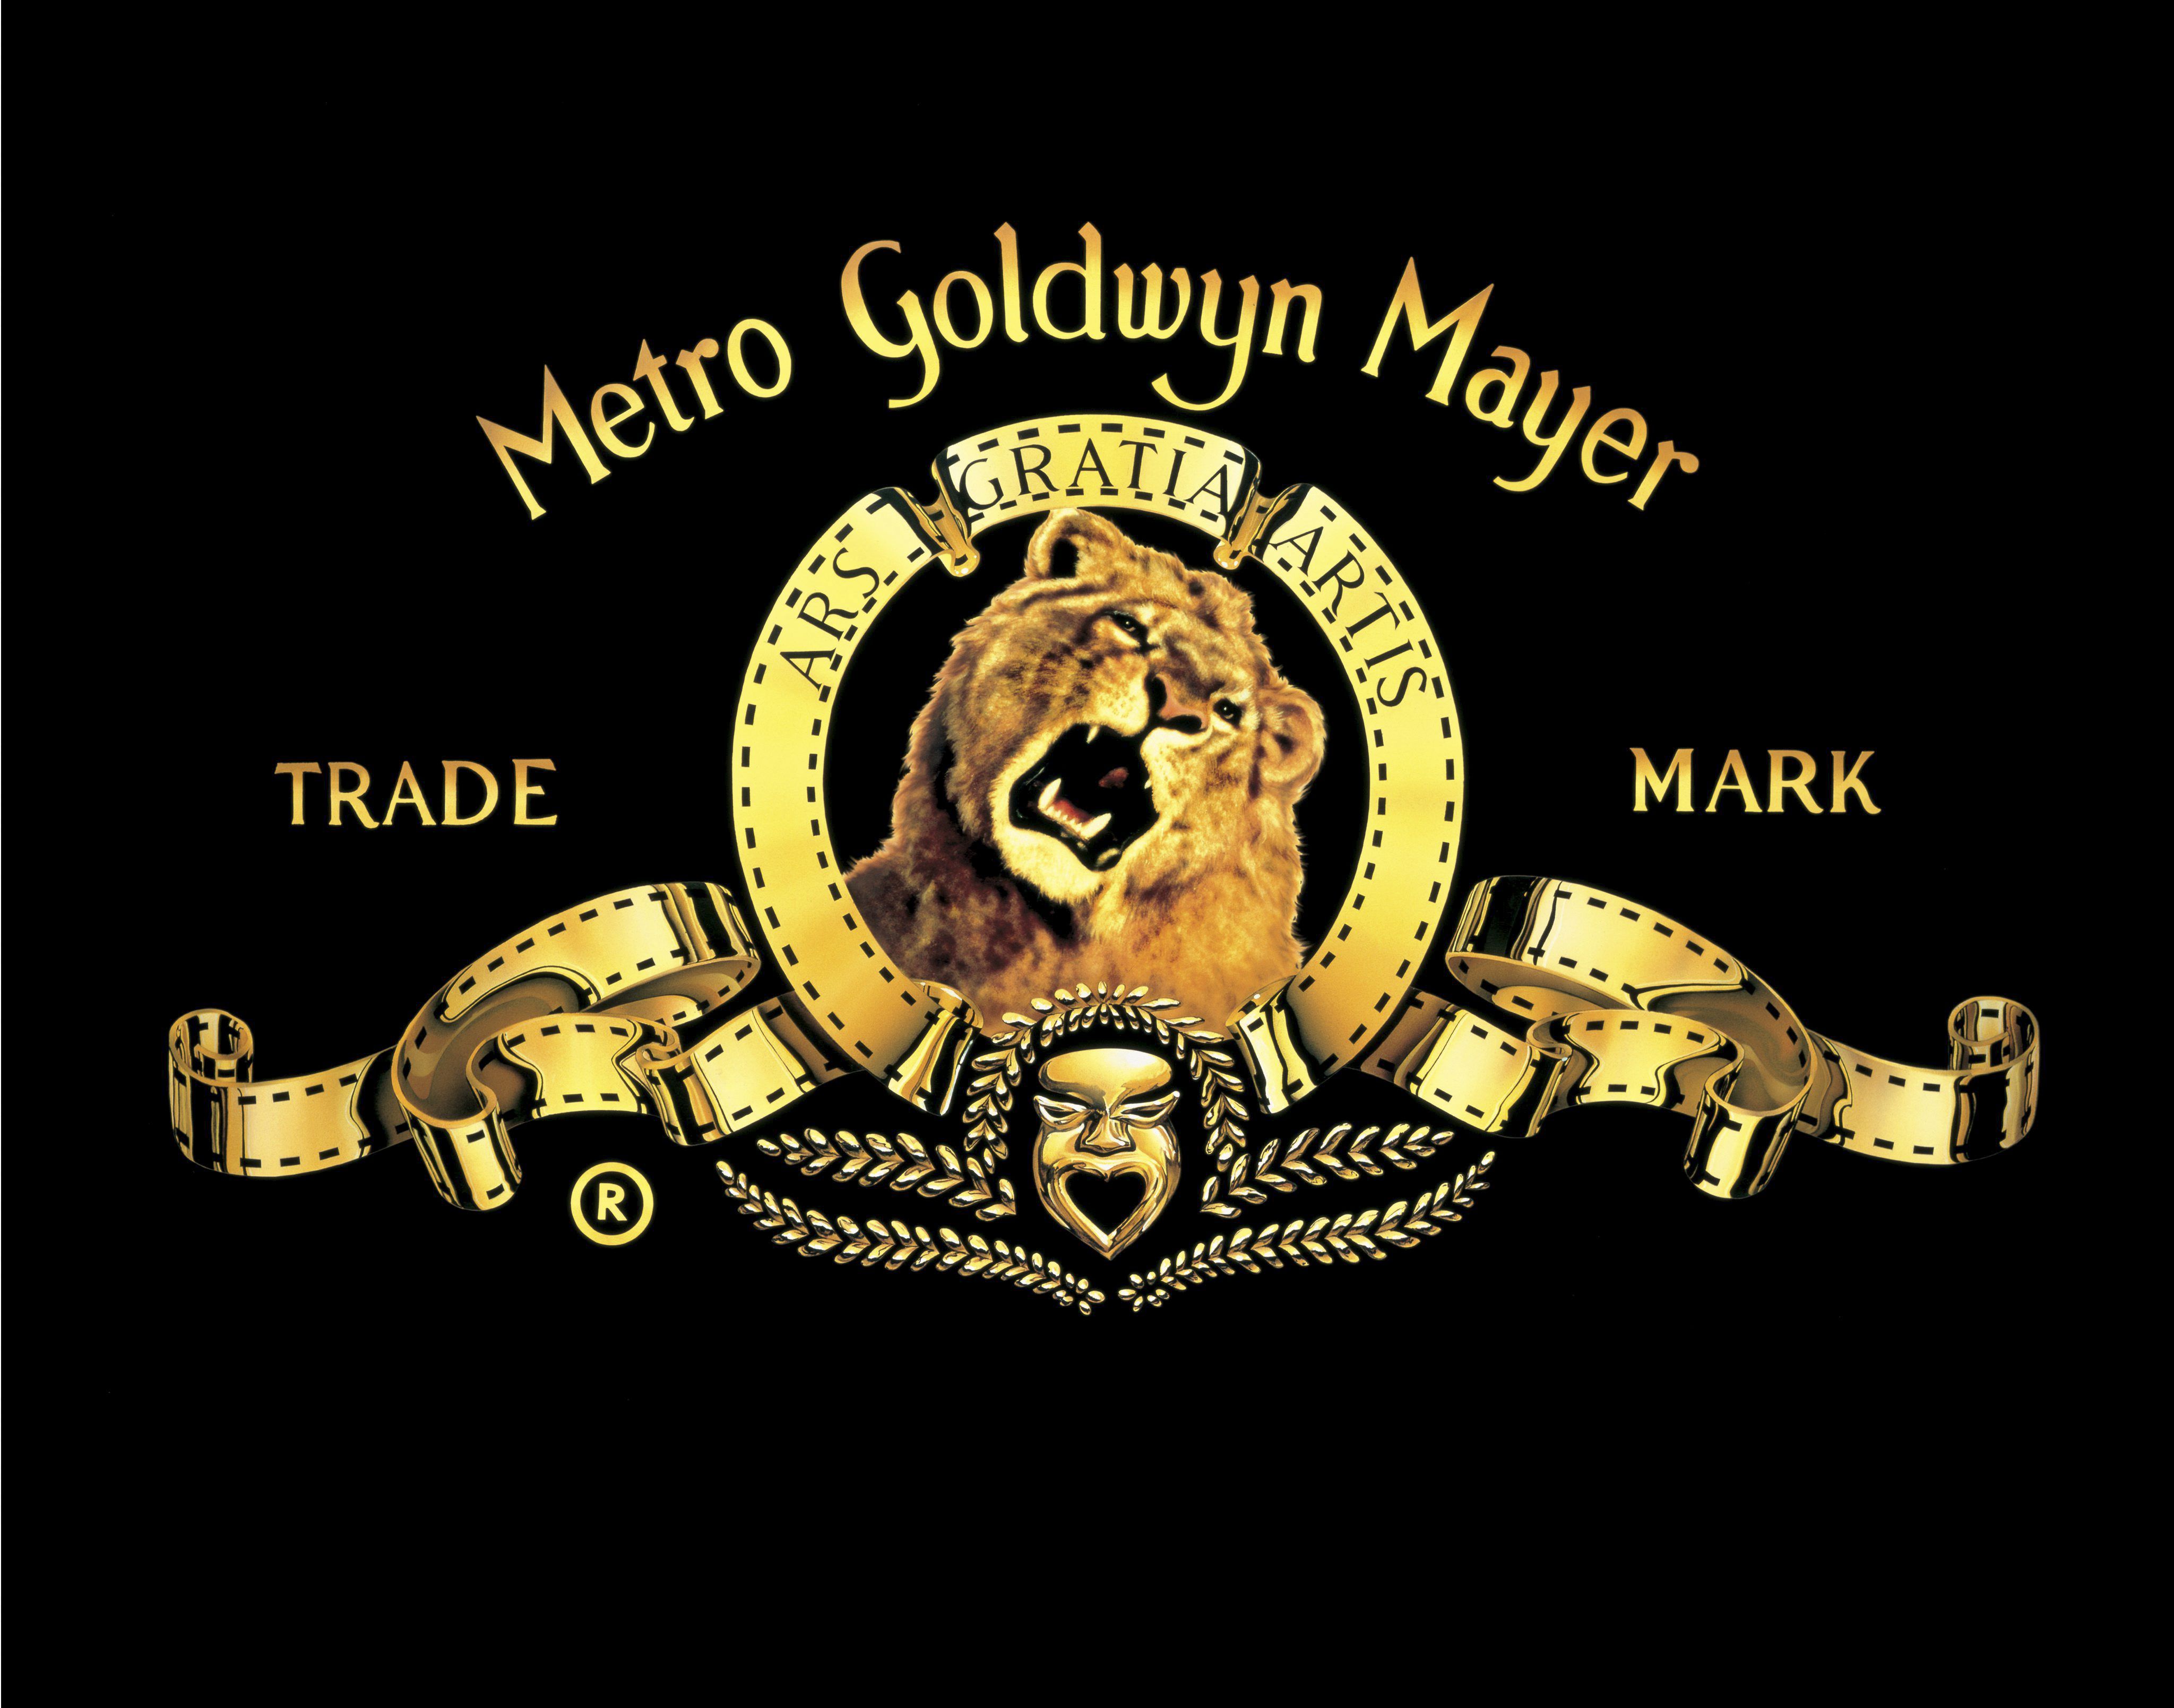 Metro Goldwyn Mayer ekoiztetxearen logo ezaguna. EFE